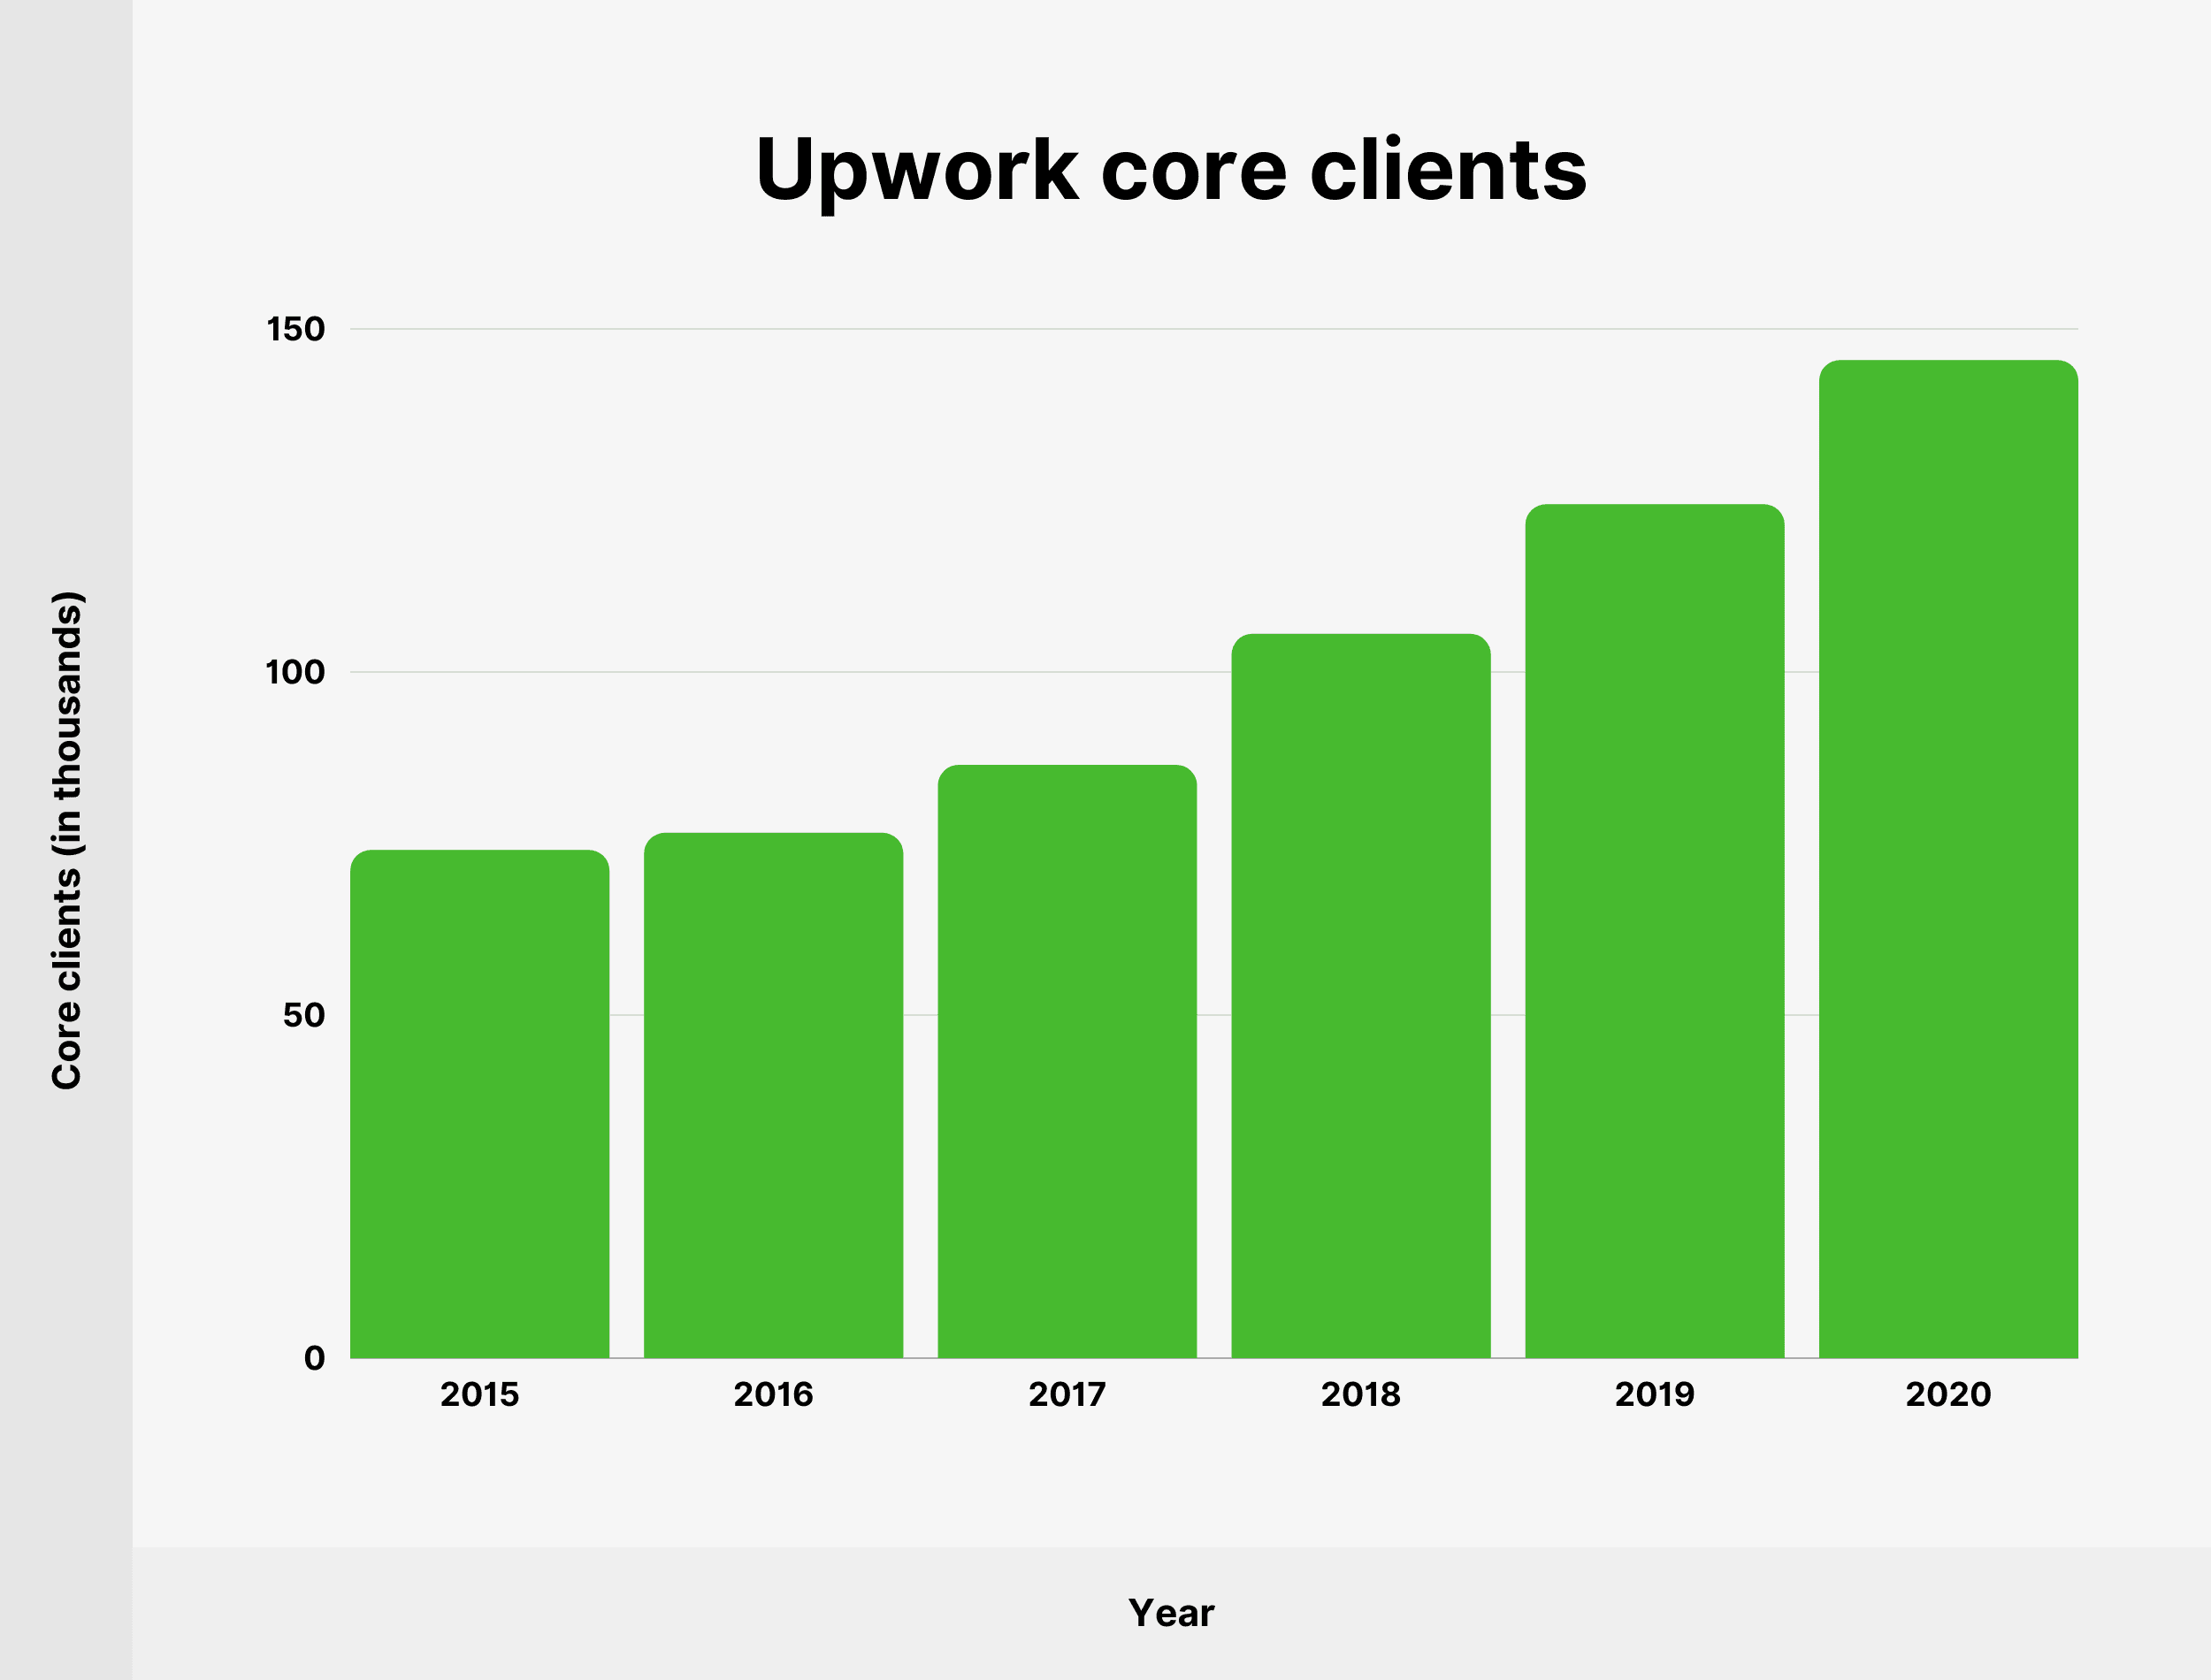 Upwork core clients